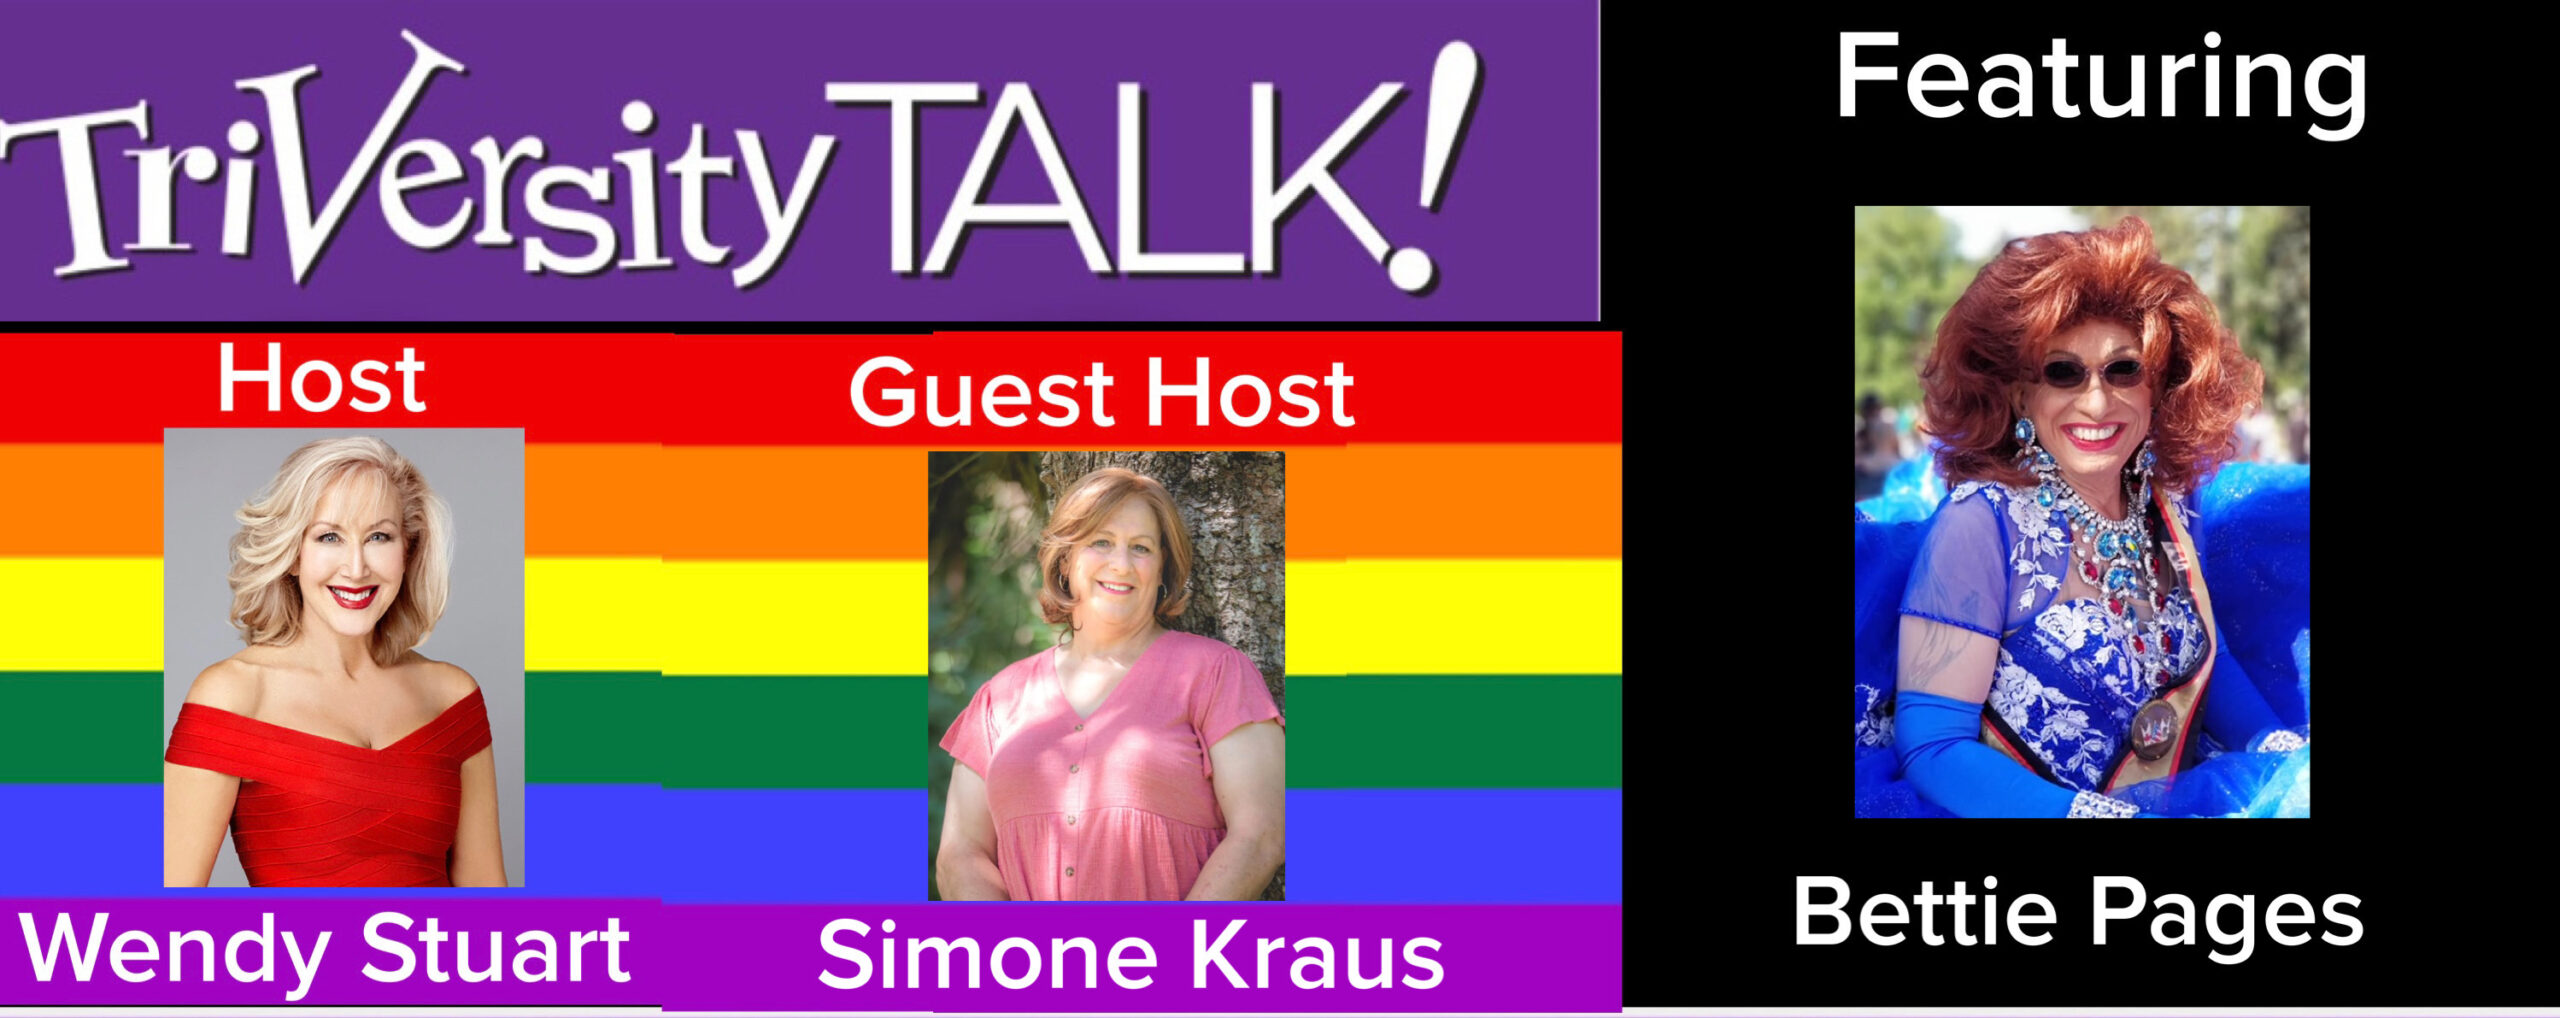 Wendy Stuart & Guest Co-Host Simone Kraus Present TriVersity Talk! 3/20/24 7 PM ET w/Bettie Pages